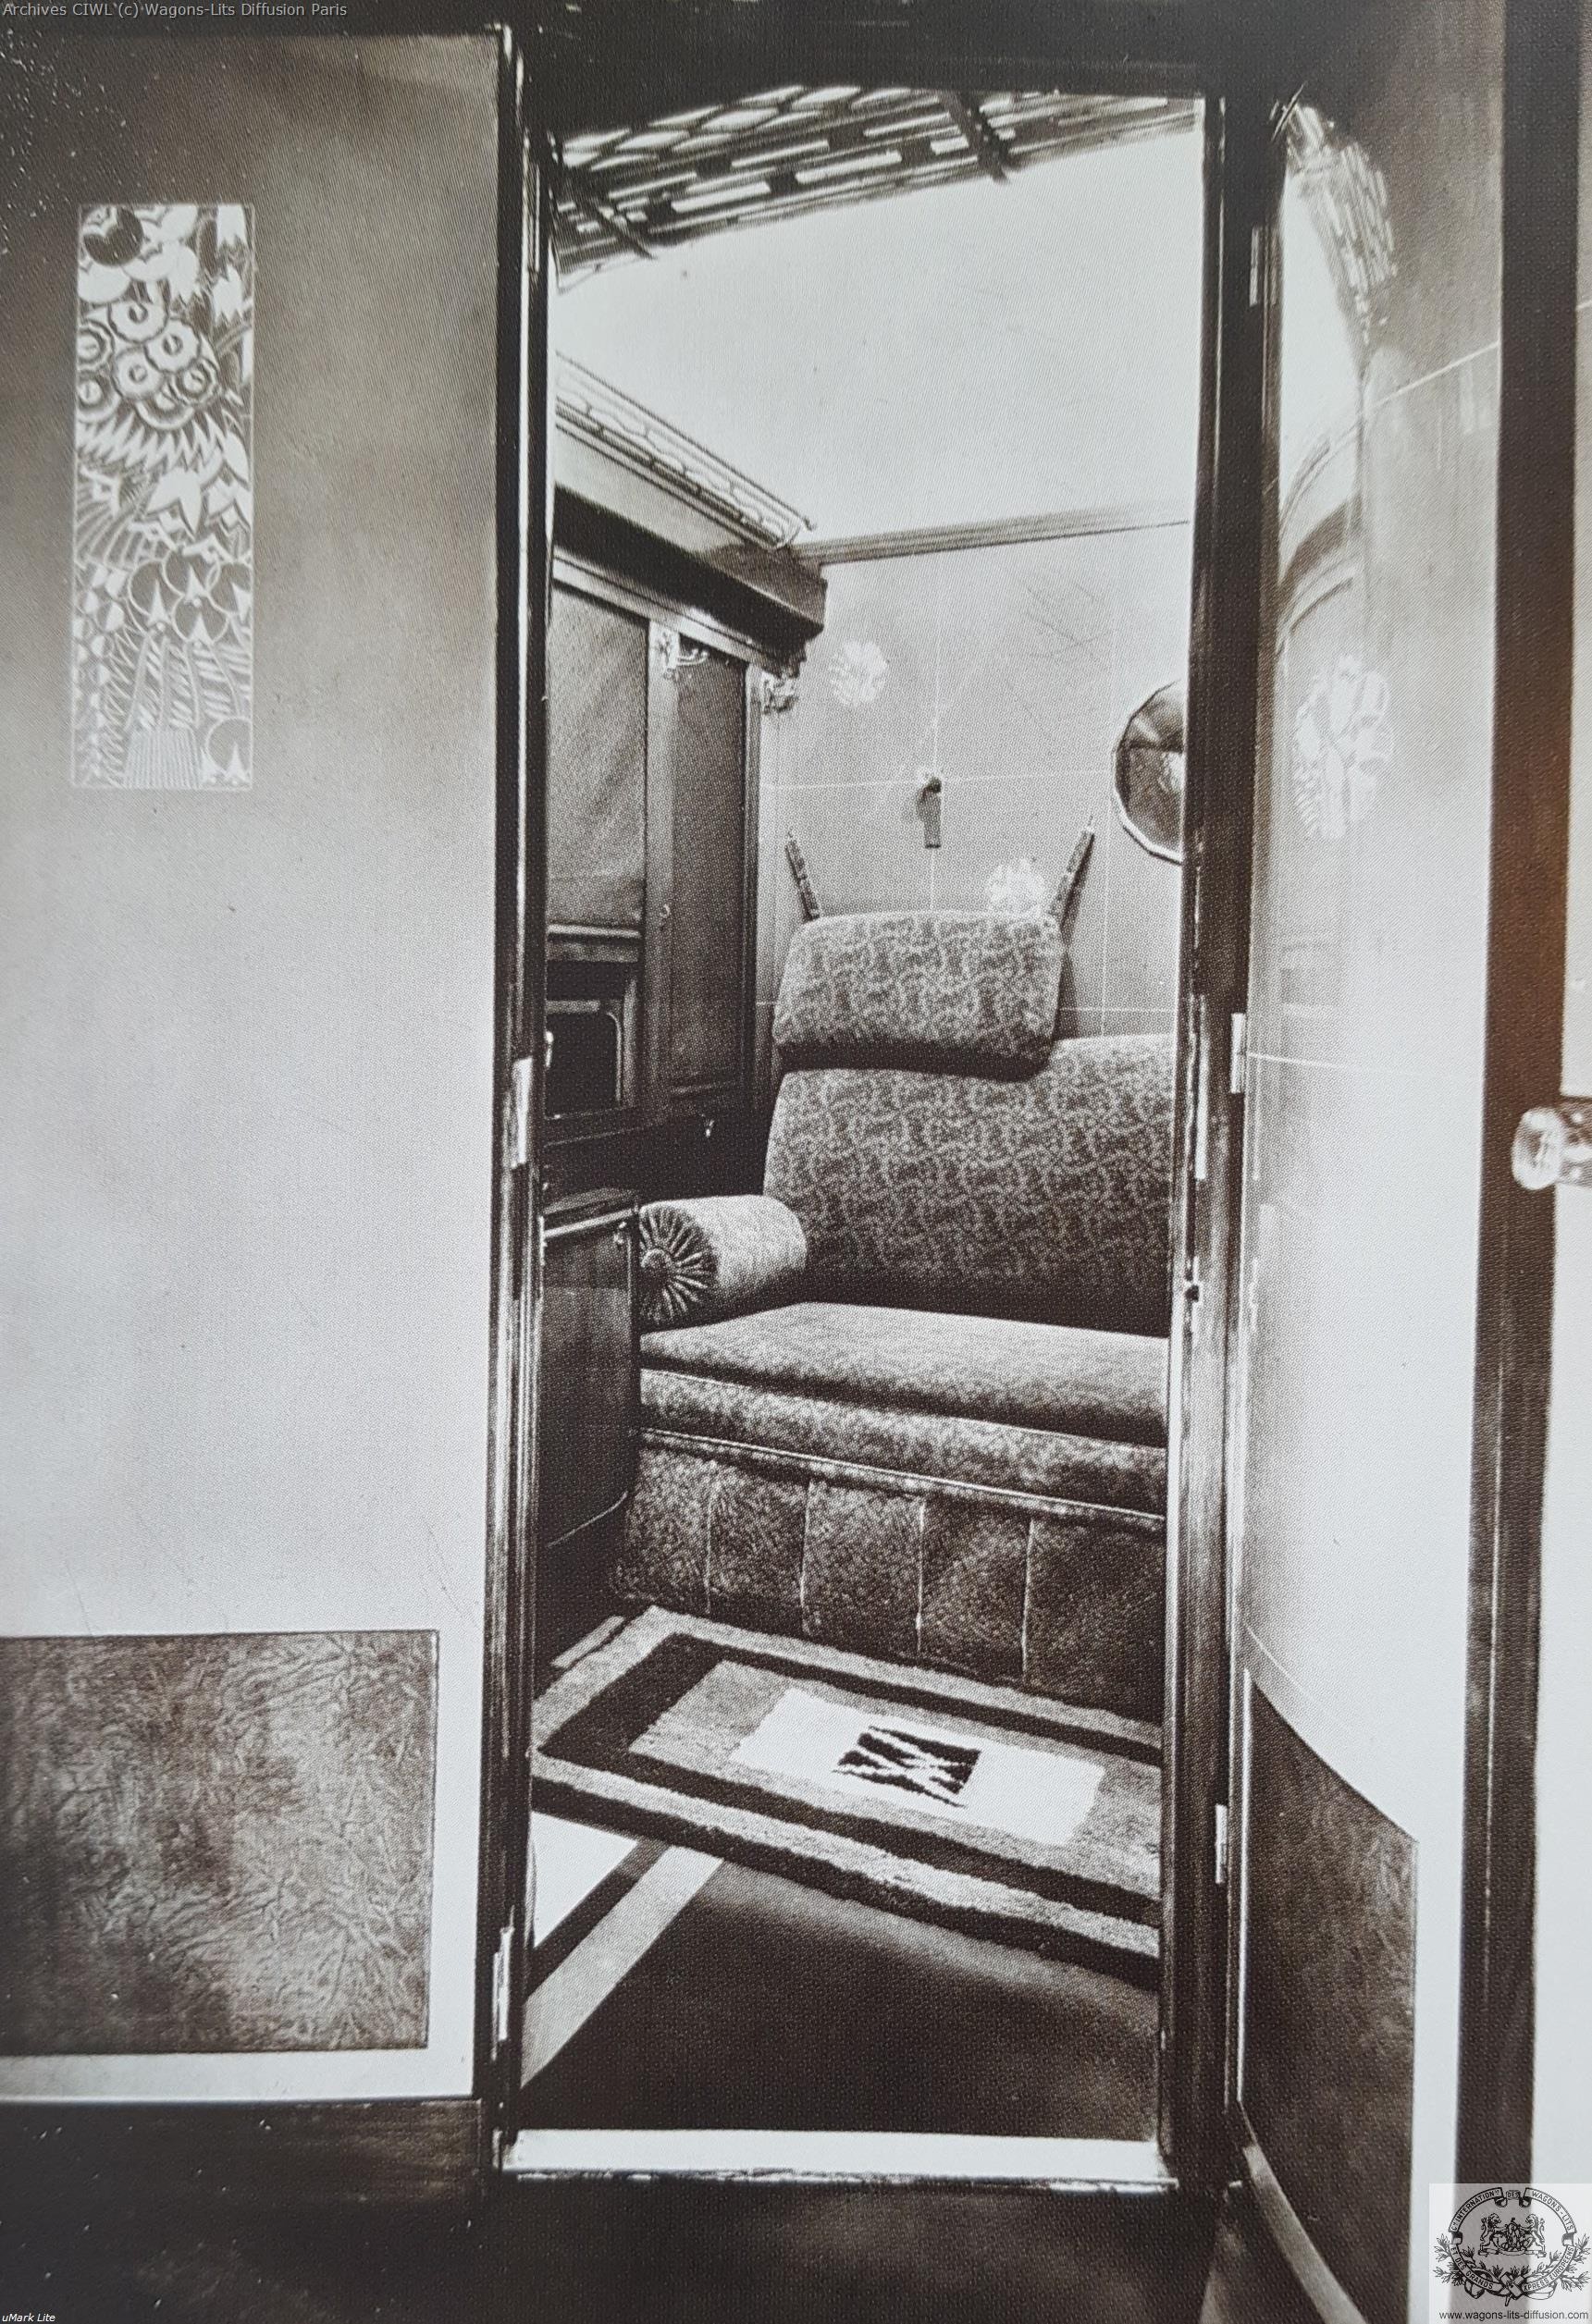 Wl interieur compartiment vers 1925